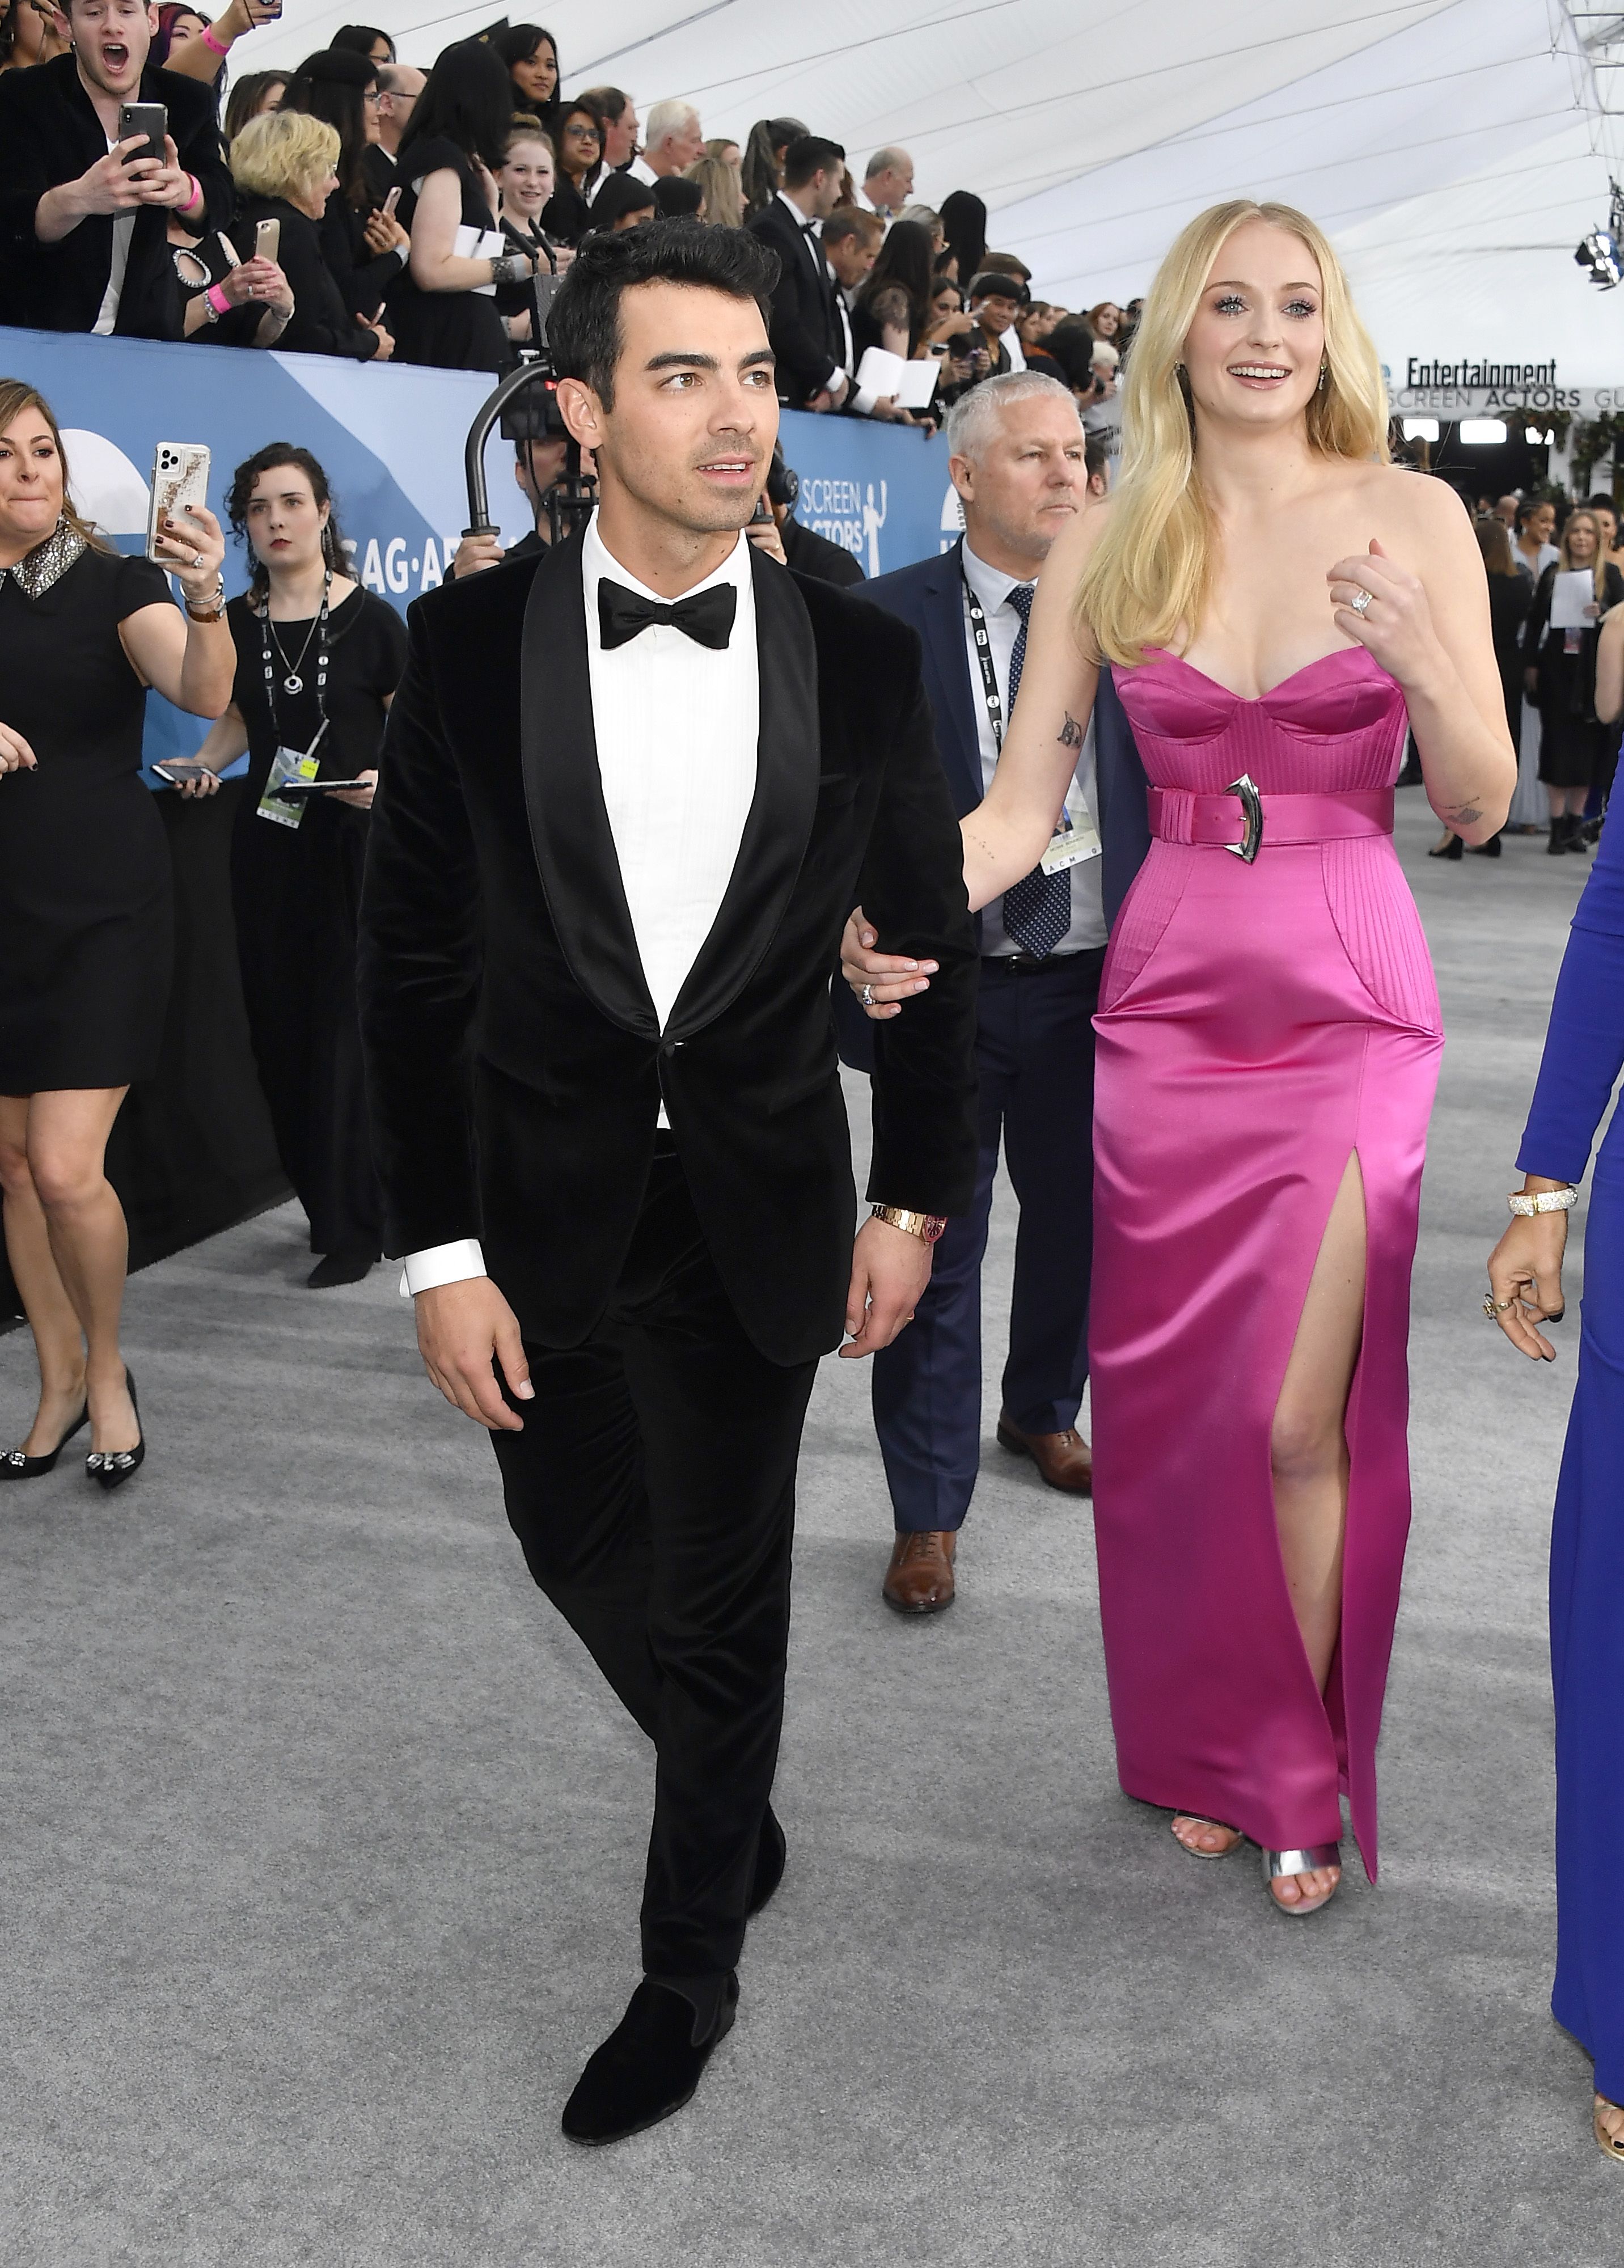 Sophie Turner At SAG Awards 2020: She Stuns With Joe Jonas At Show –  Hollywood Life